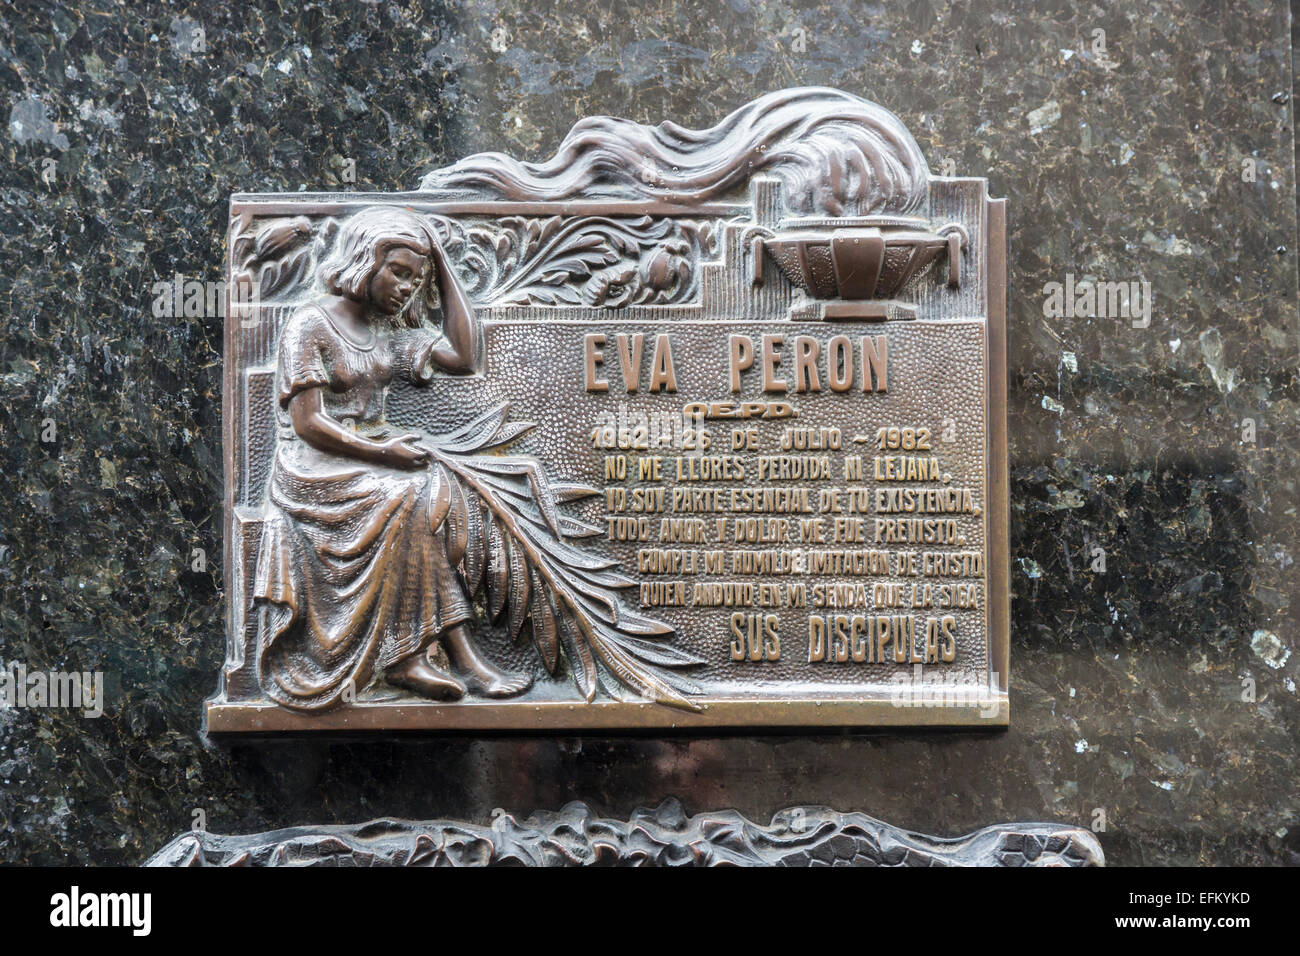 La célèbre famille Duarte (Familia Duarte) et mausolée de culte au cimetière de Recoleta, Buenos Aires, Argentine avec Eva Peron (Evita) plaque gravée Banque D'Images